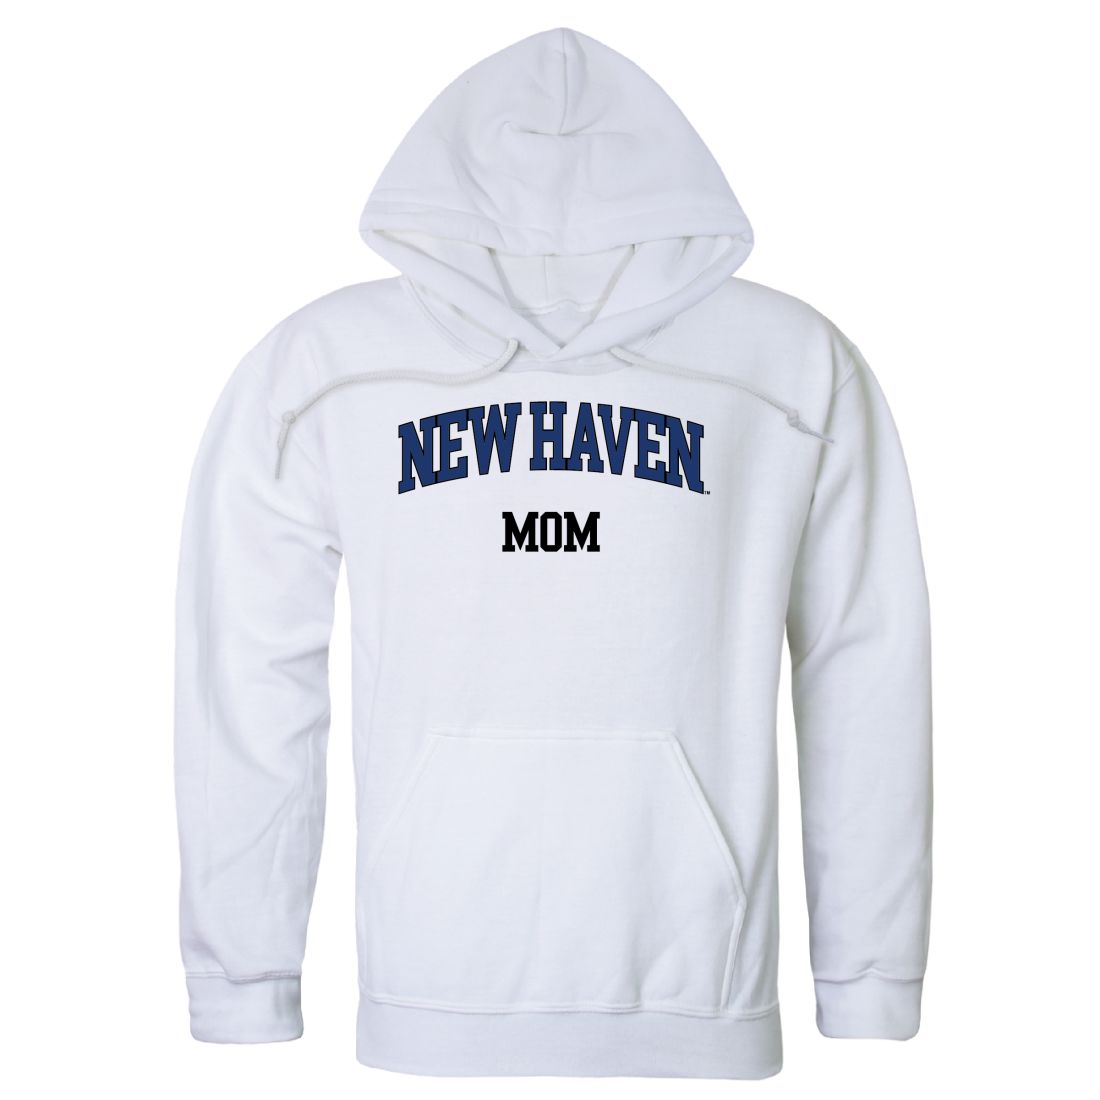 University of New Haven Chargers Mom Fleece Hoodie Sweatshirts